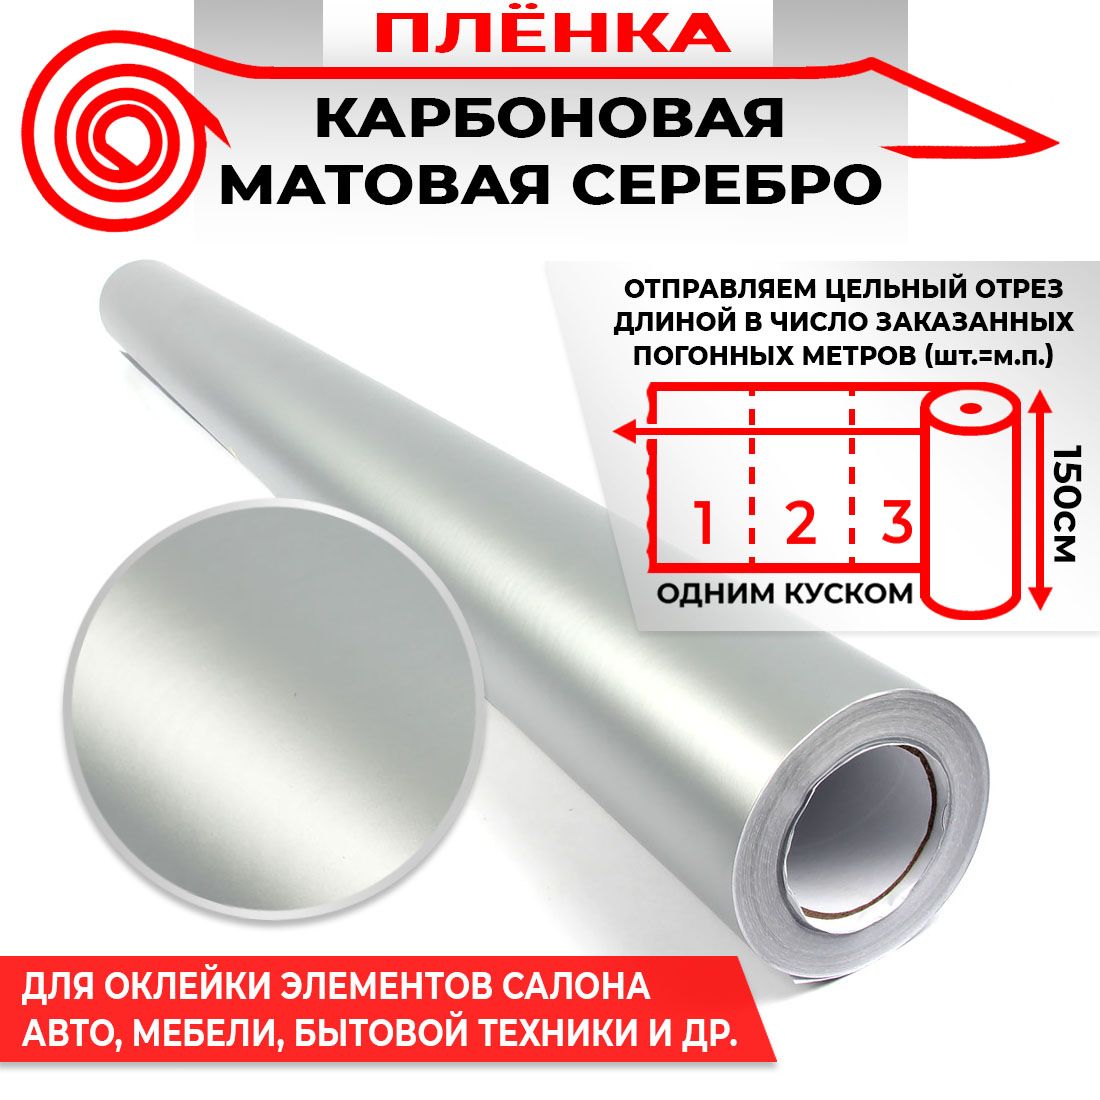 Пленка карбоновая матовая - Серебро 160мкм 1.5м х 1п.м